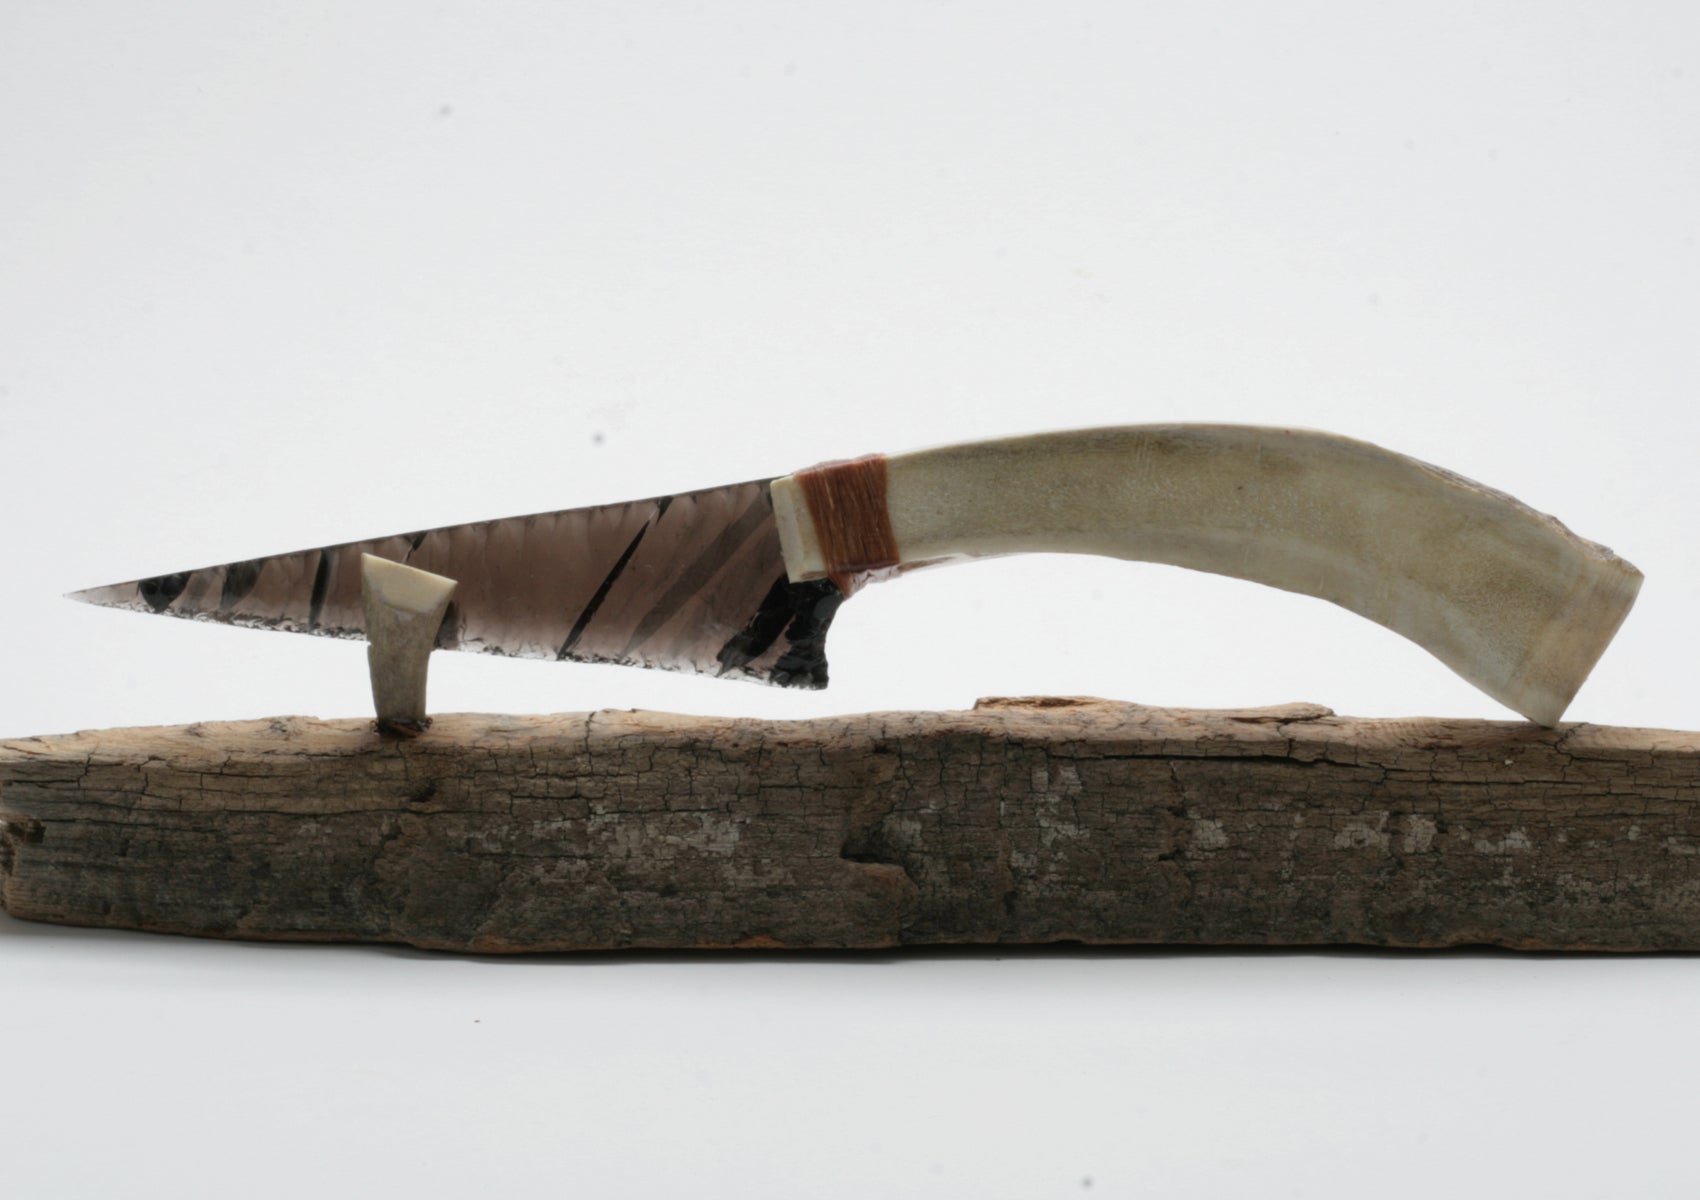 Transparent Obsidian Knife with Moose Antler Handle